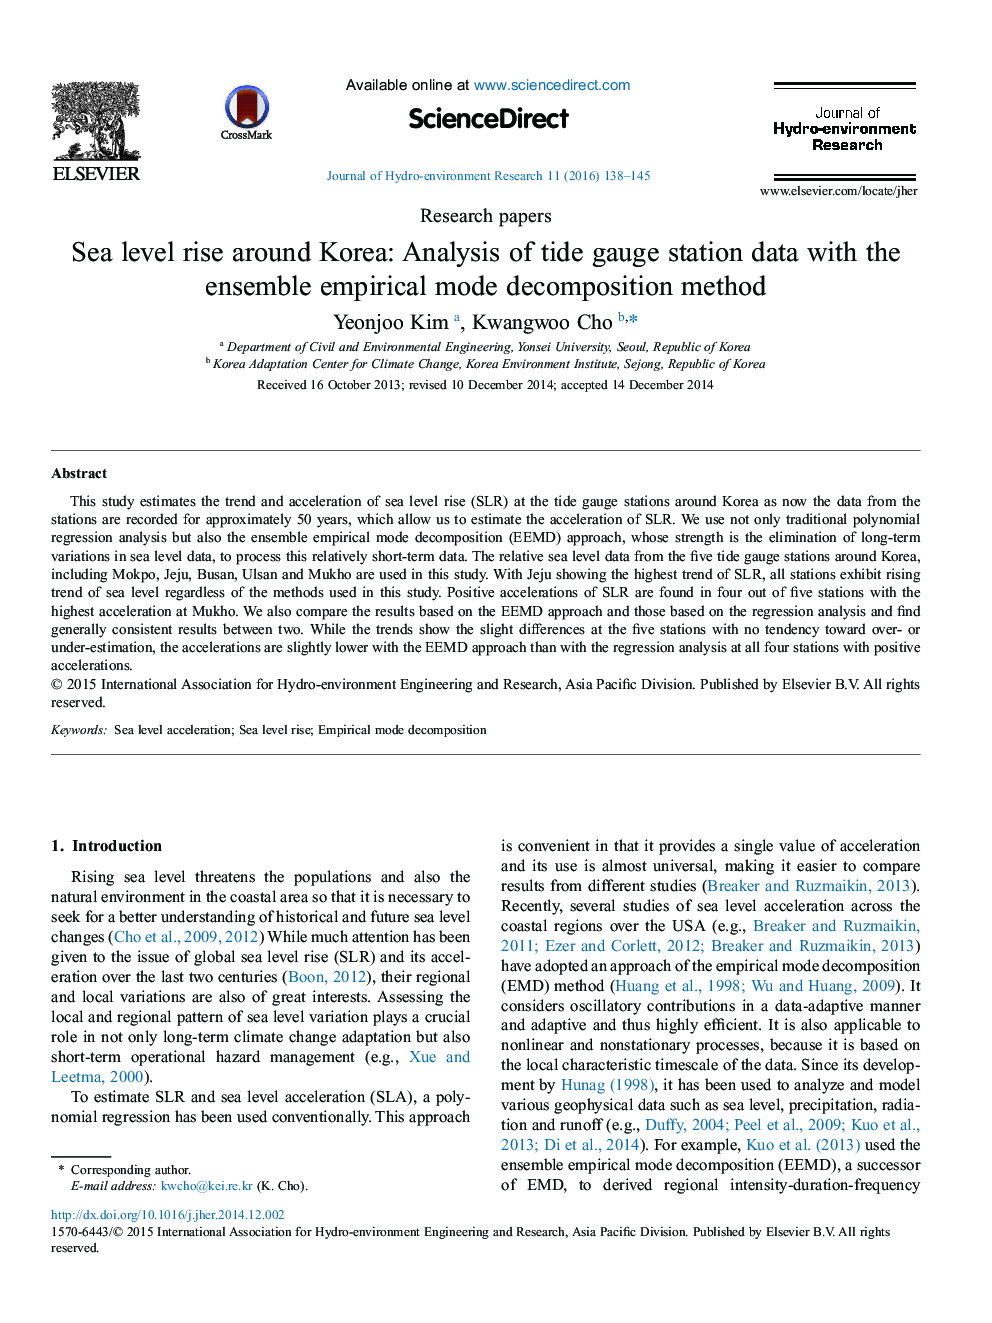 افزایش سطح دریا در اطراف کره: تجزیه و تحلیل داده های ایستگاه سنجنده جزر و مد با روش تجزیه حالت تجربی گروه 